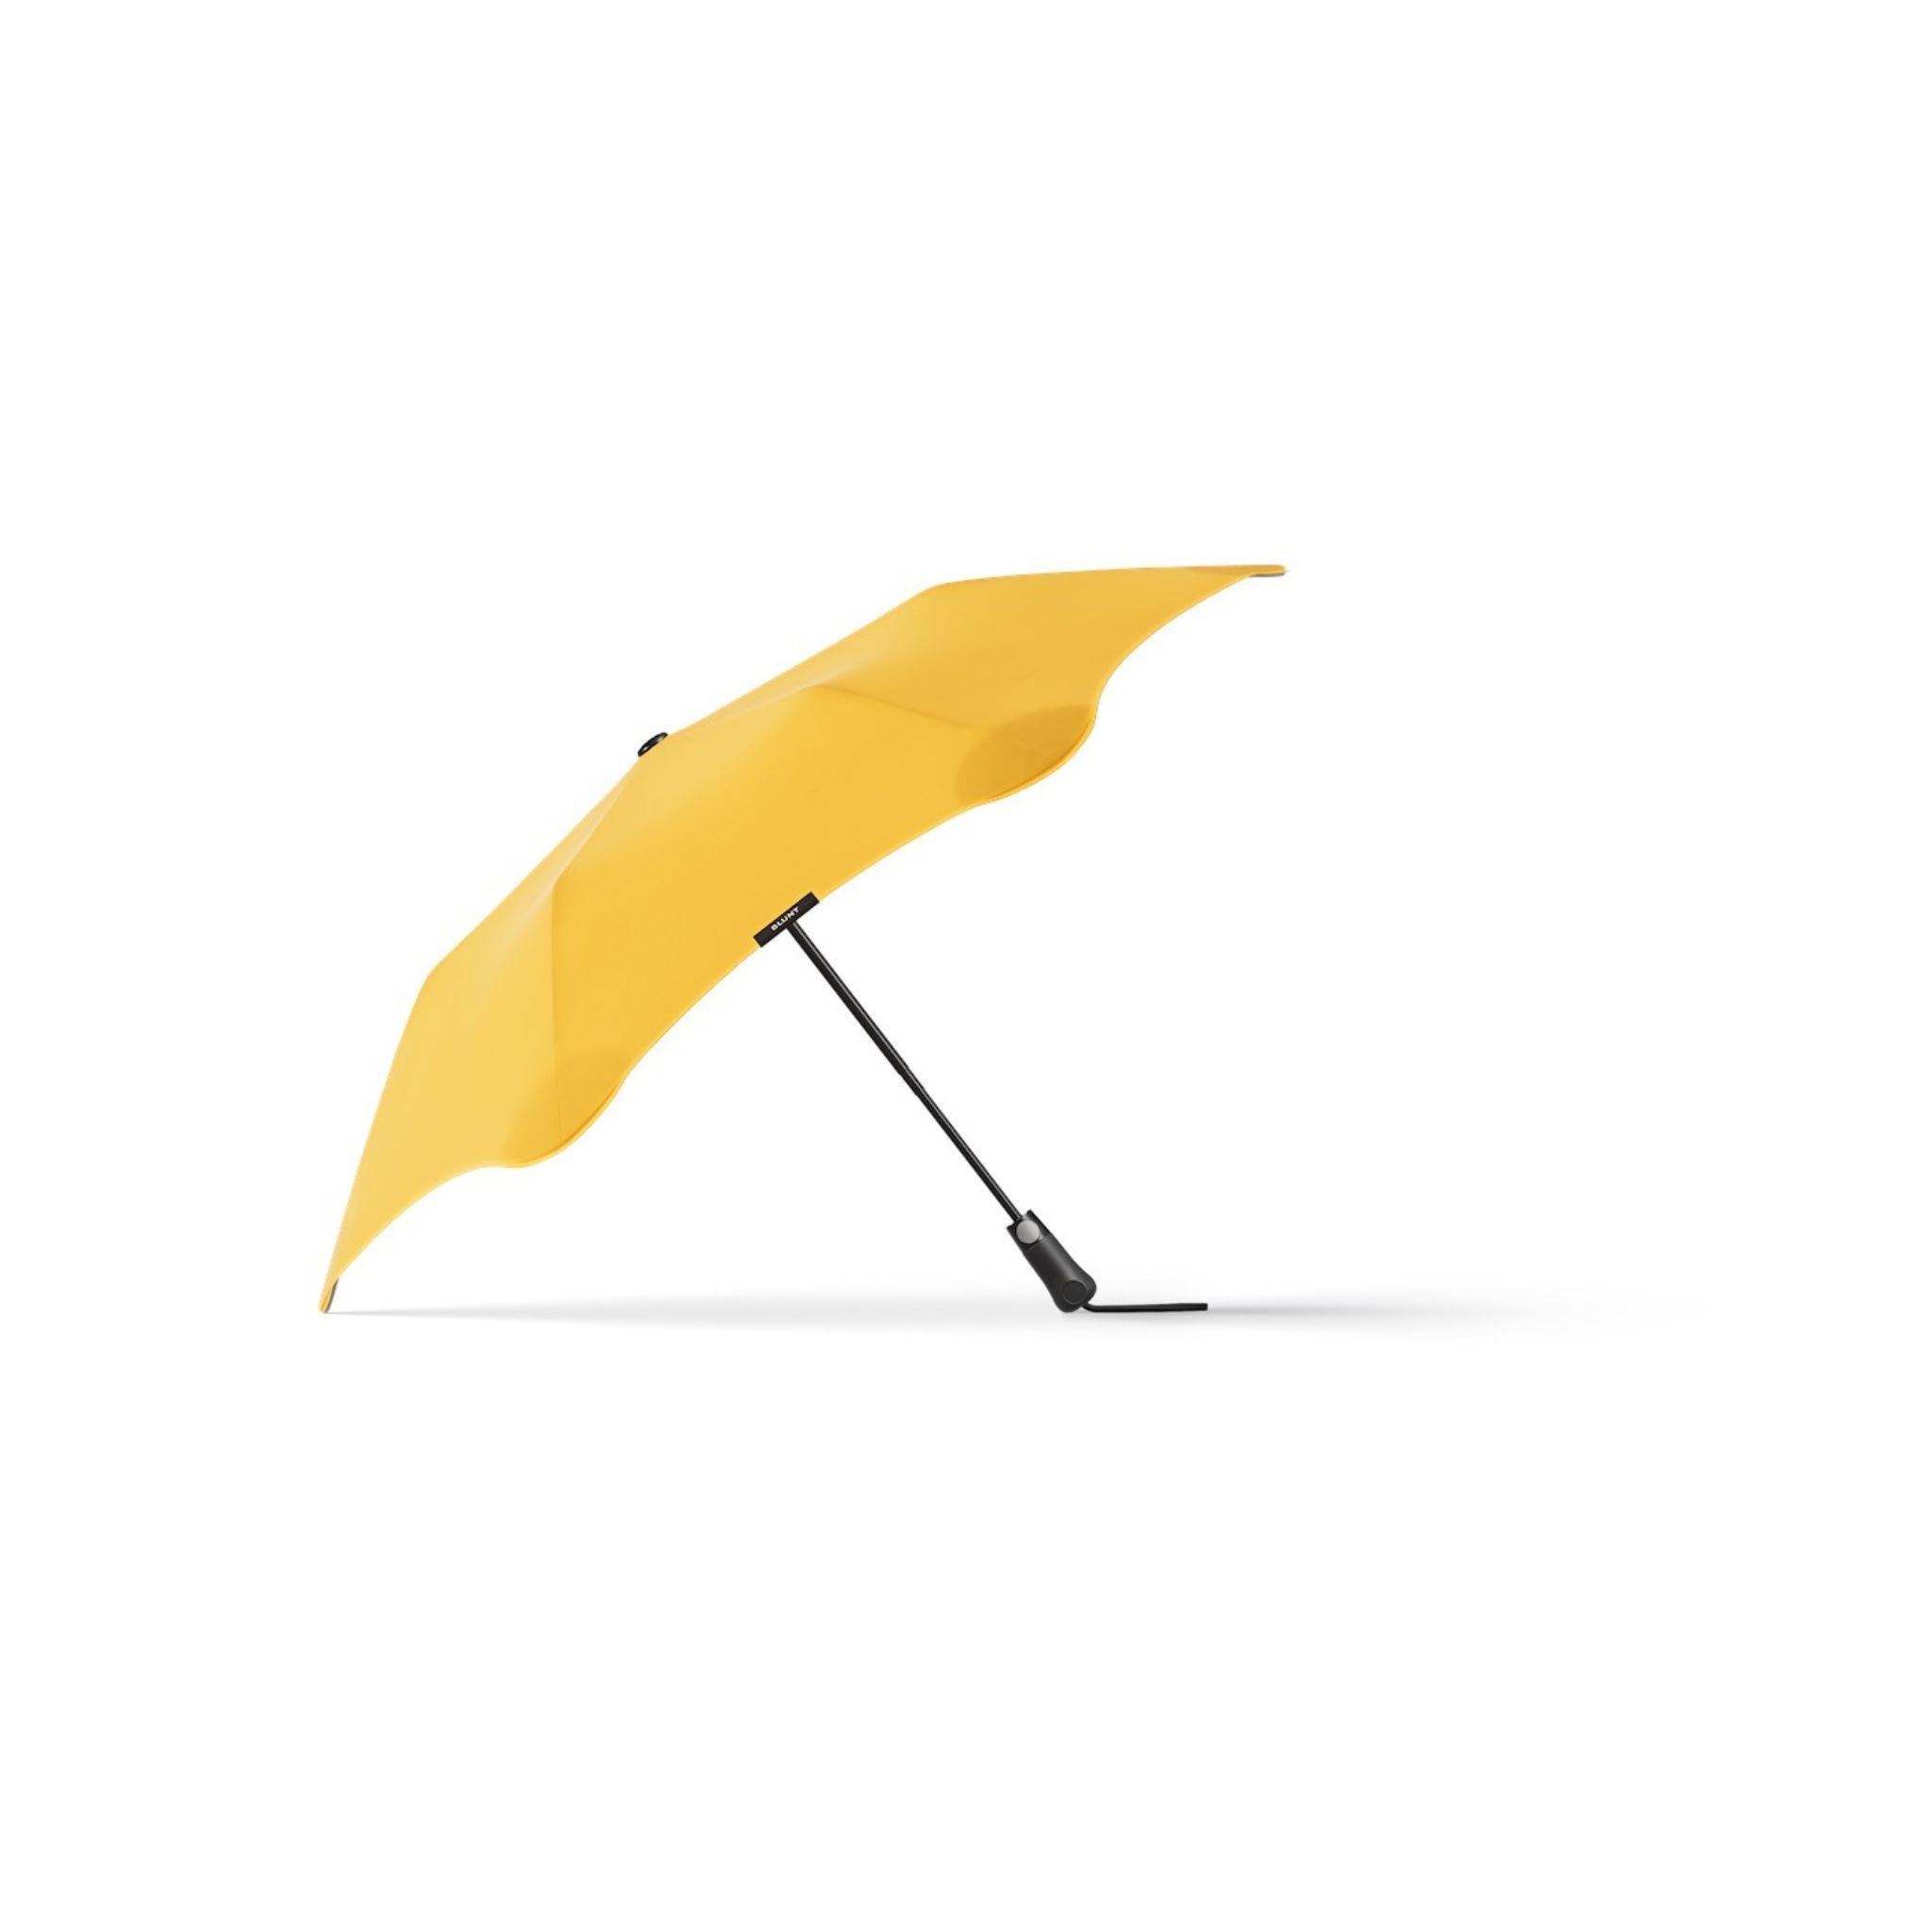 The Metro Compact Umbrella